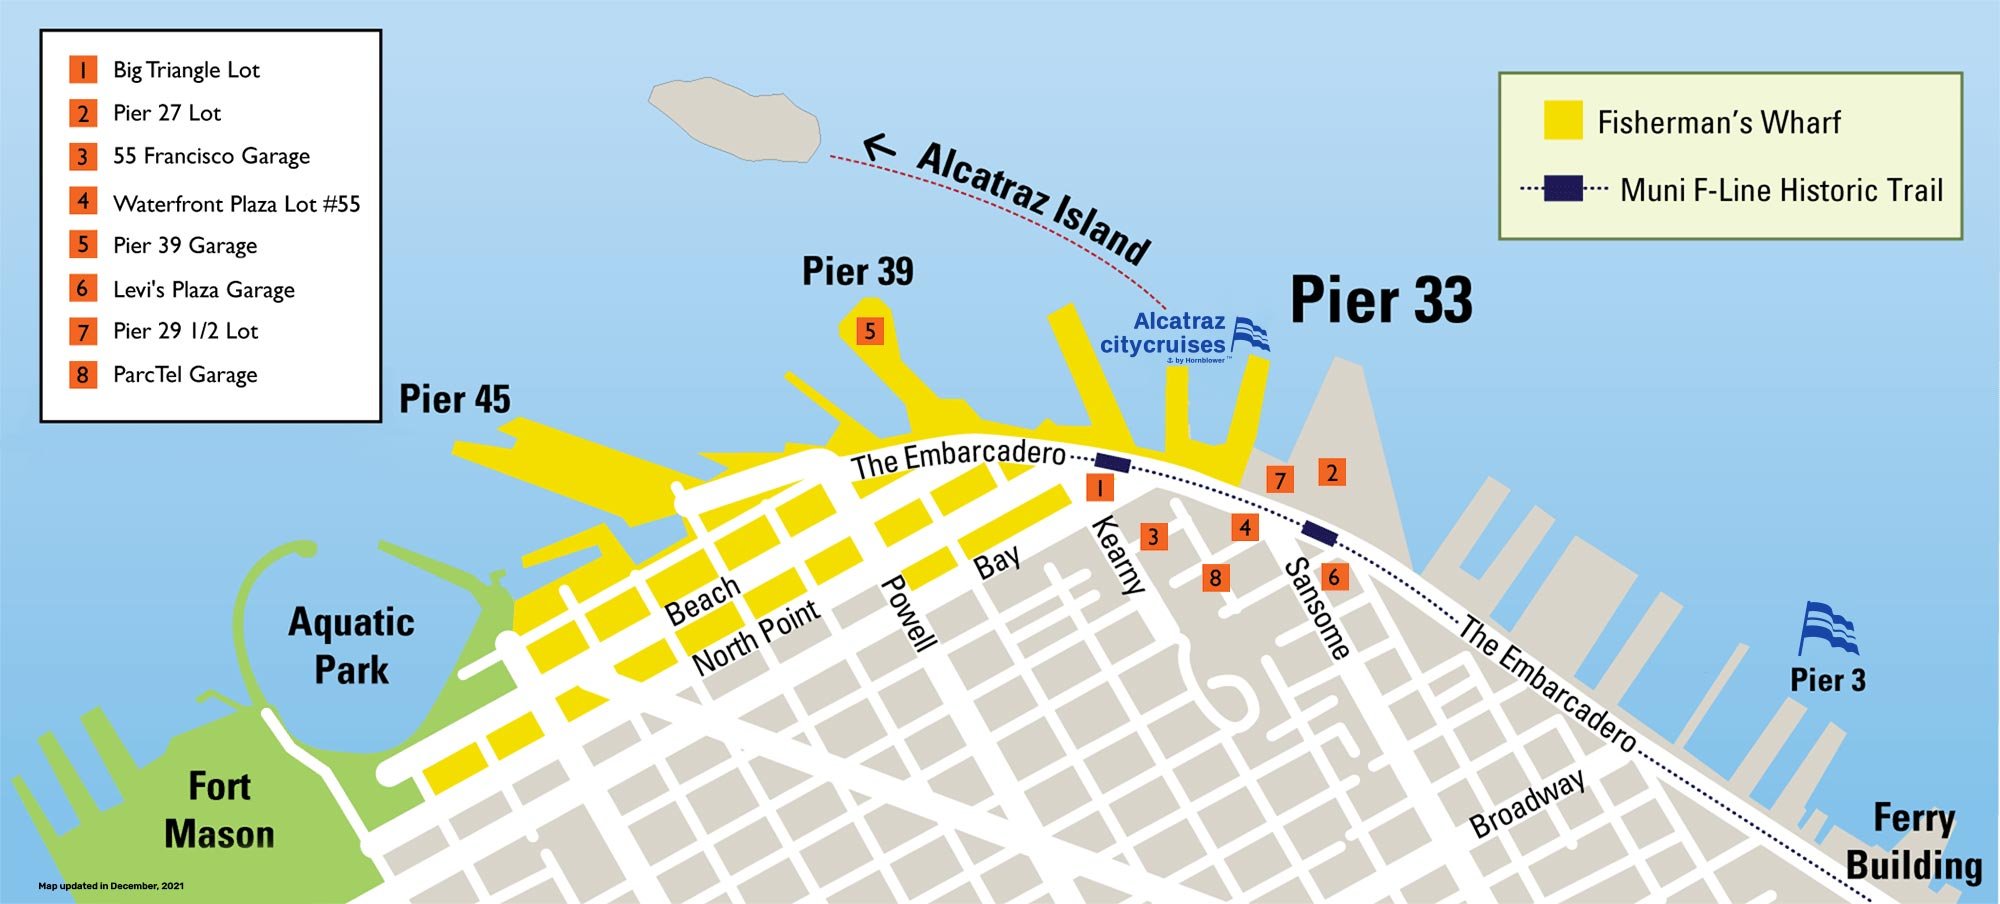 Alcatraz City Cruises parking location map.